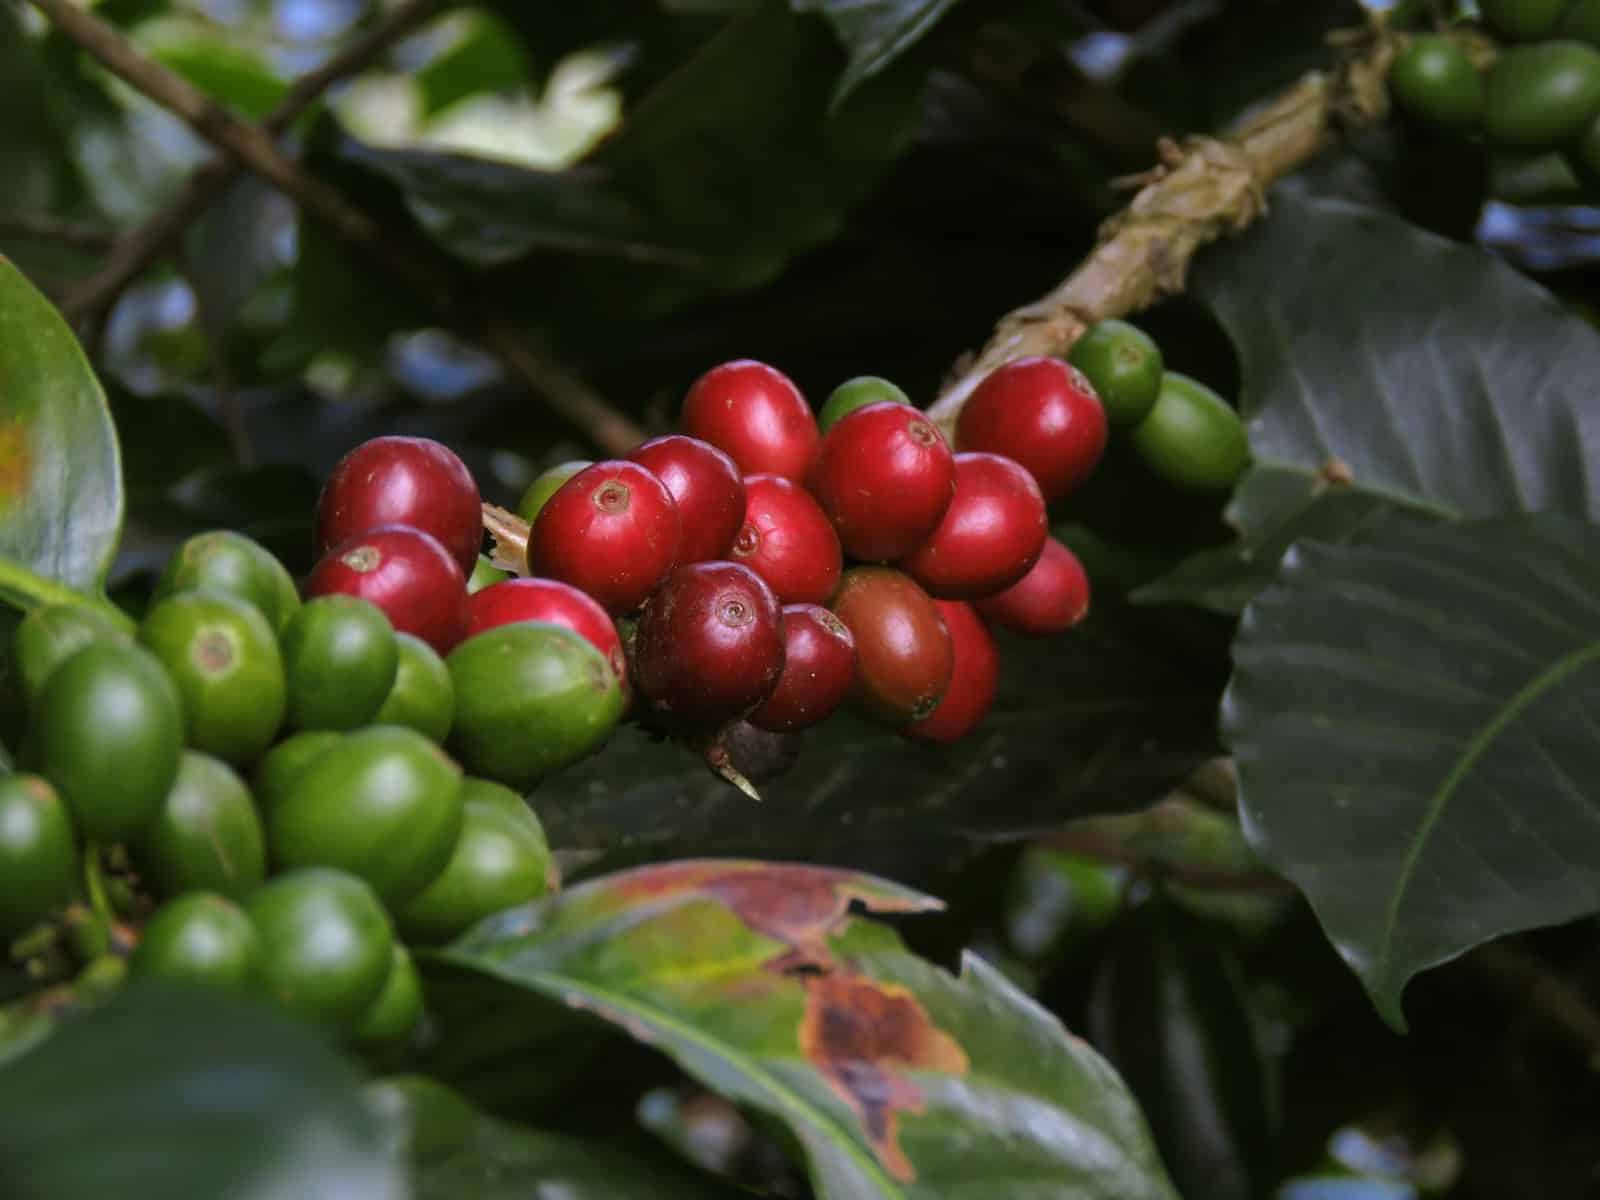 Kaffe i Colombia